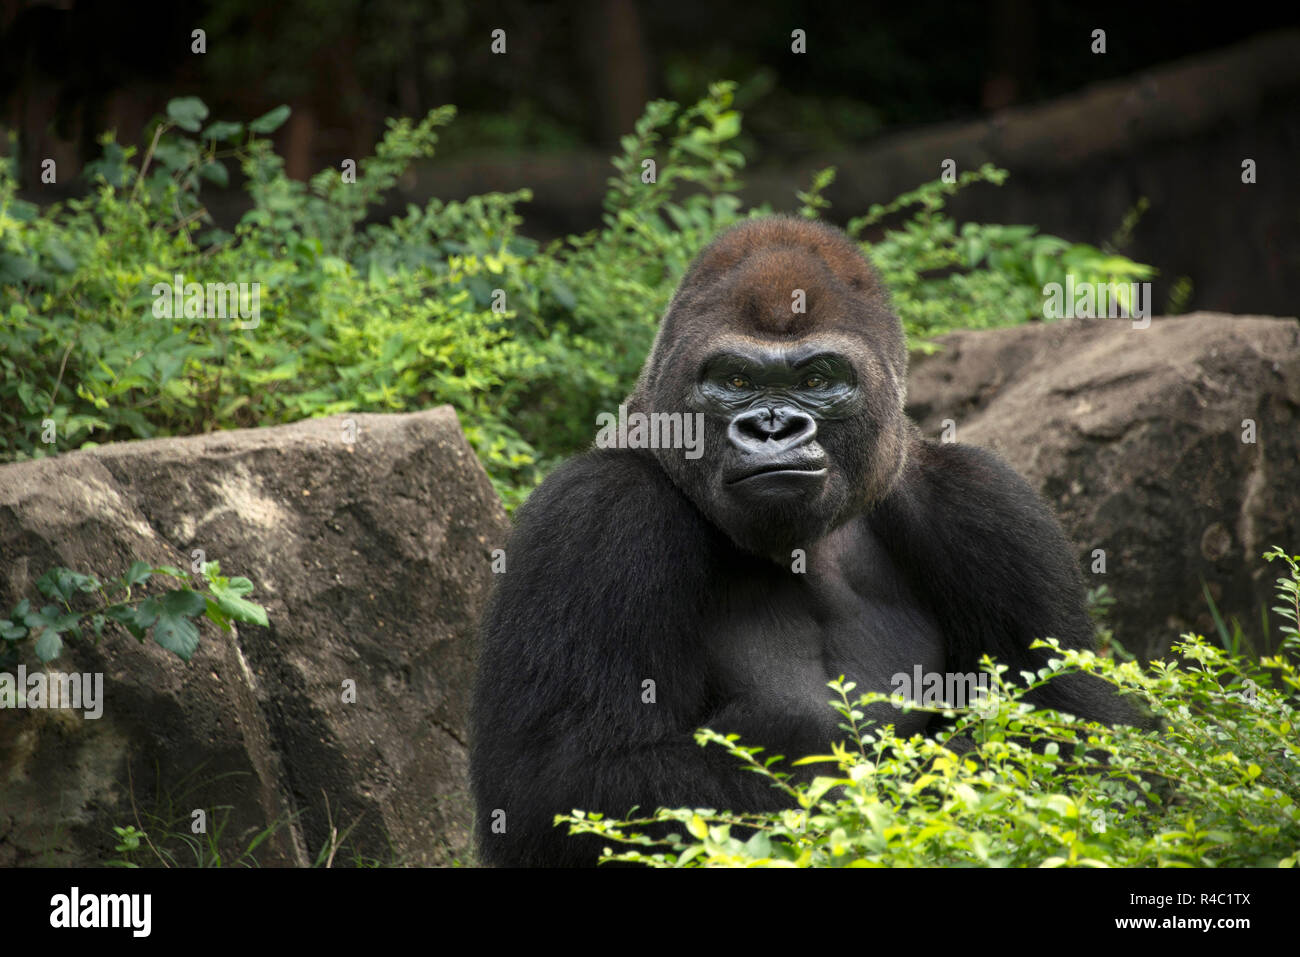 Gorilla silverback macho de los grandes simios de África en la verde selva tropical arbustos Foto de stock